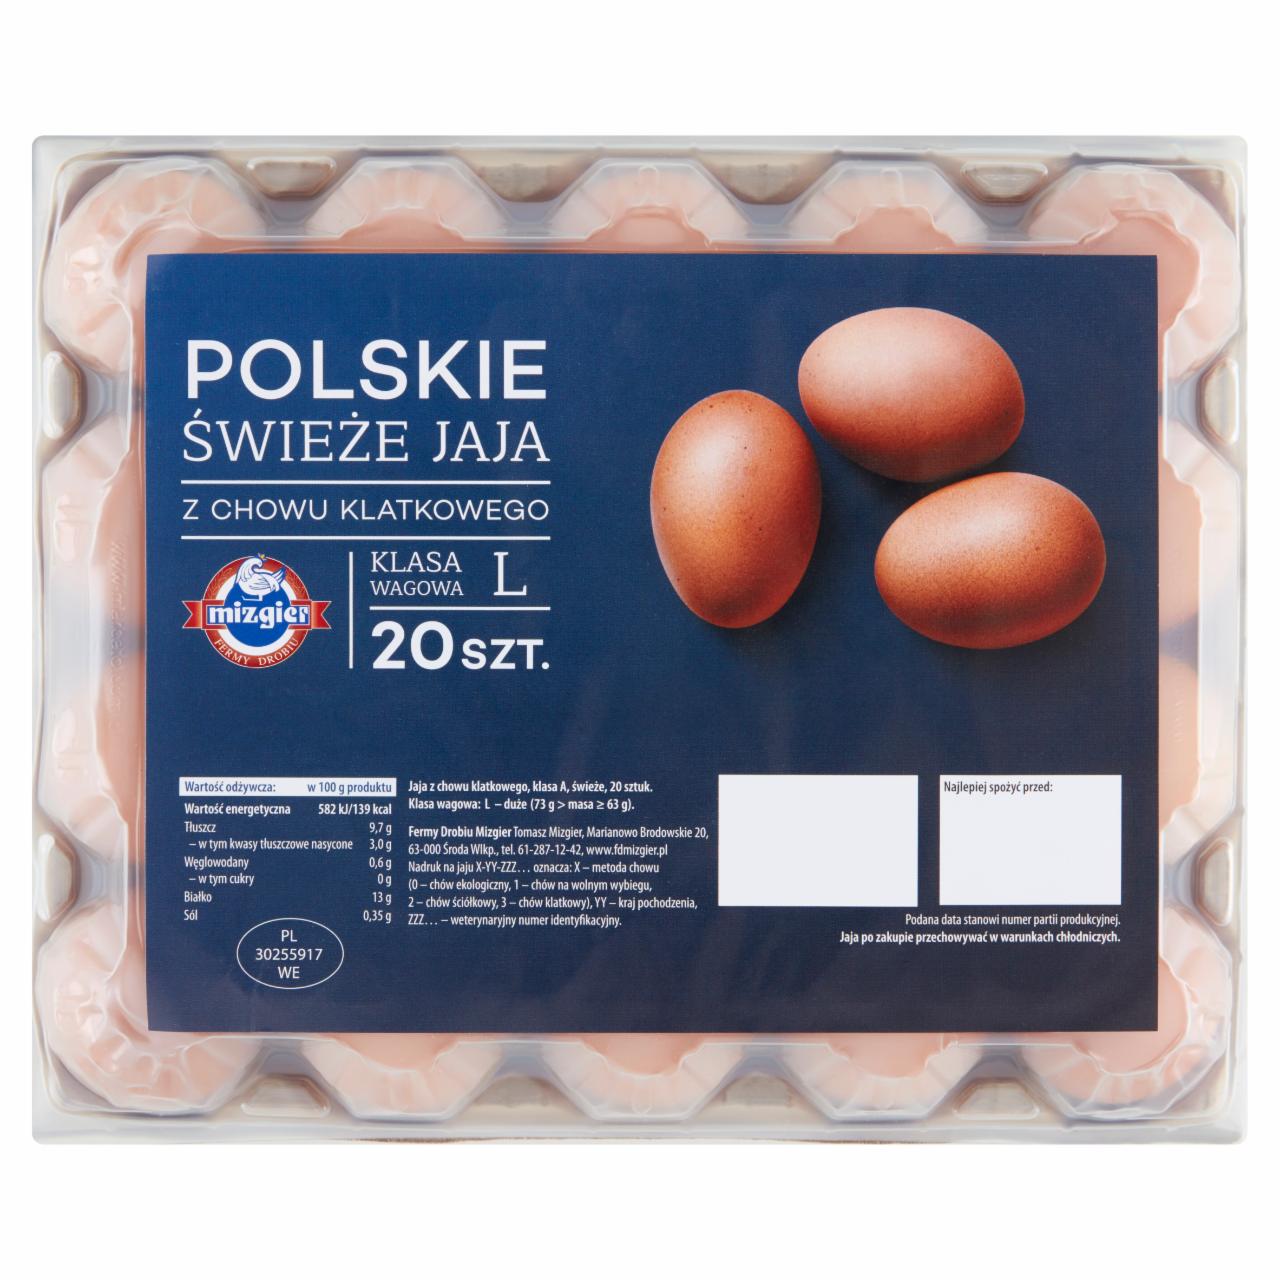 Zdjęcia - Mizgier Polskie świeże jaja z chowu klatkowego L 20 sztuk